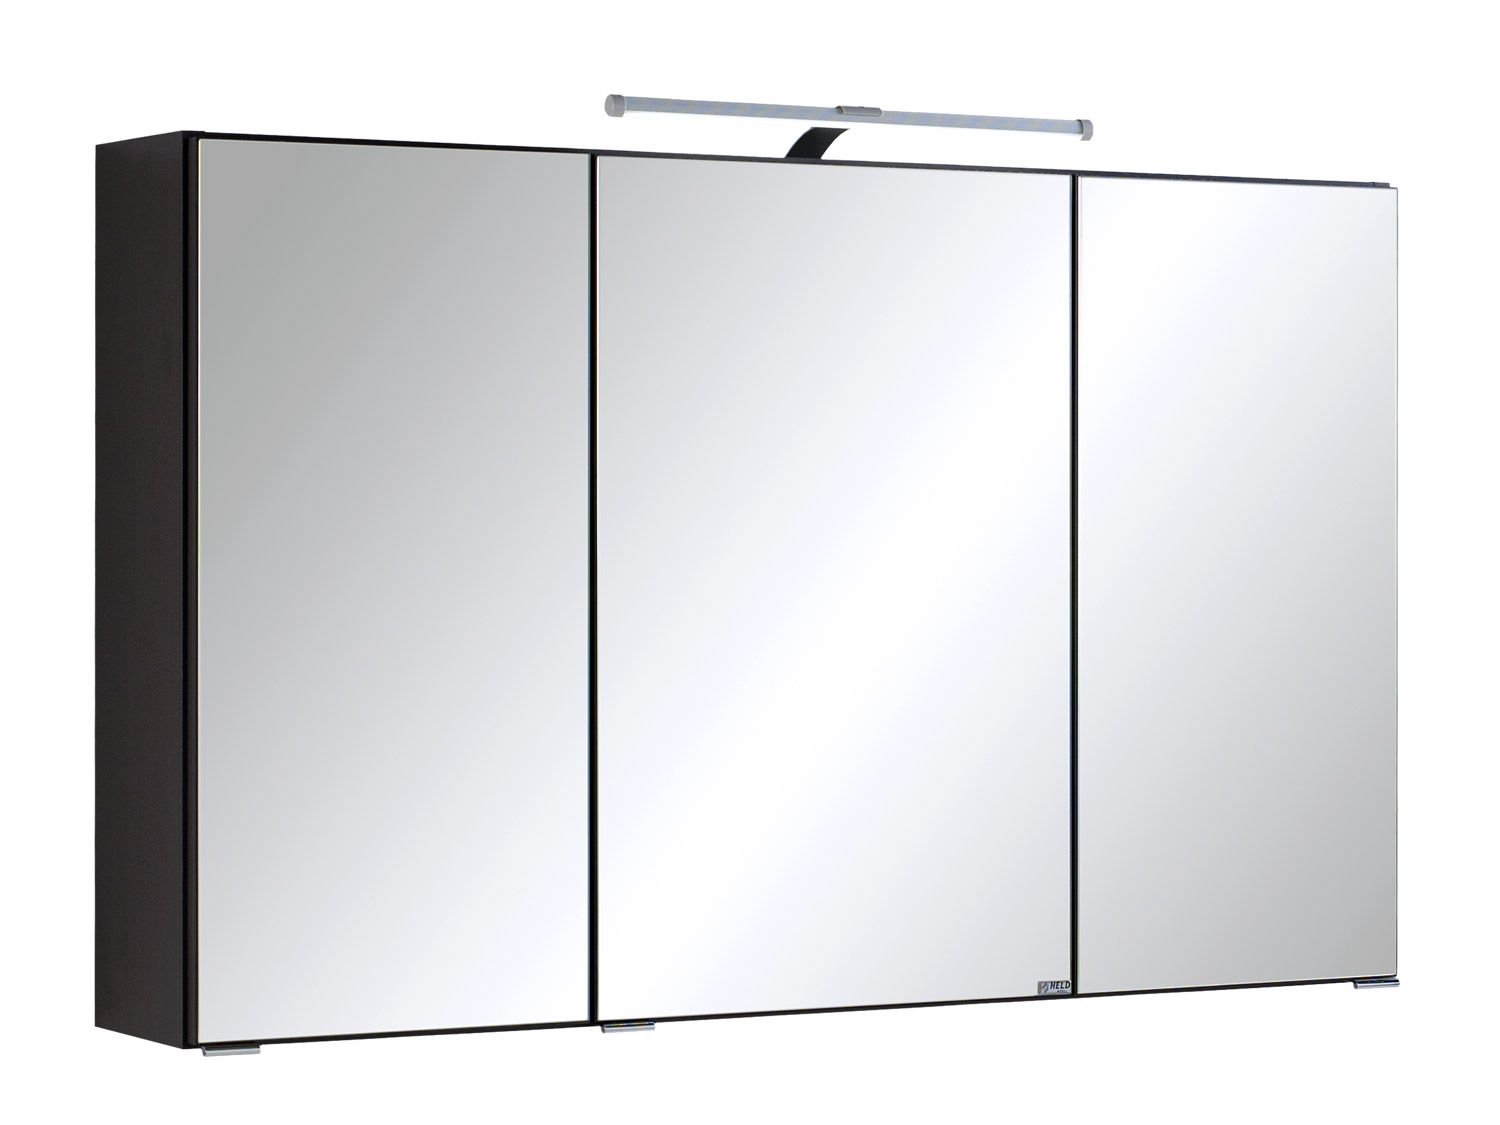 HELD Spiegelschrank »Parma 3D«, mit 3 Spiegeltüren, 6 Glas-Einlegeböden, 1 Aufbauleuchte